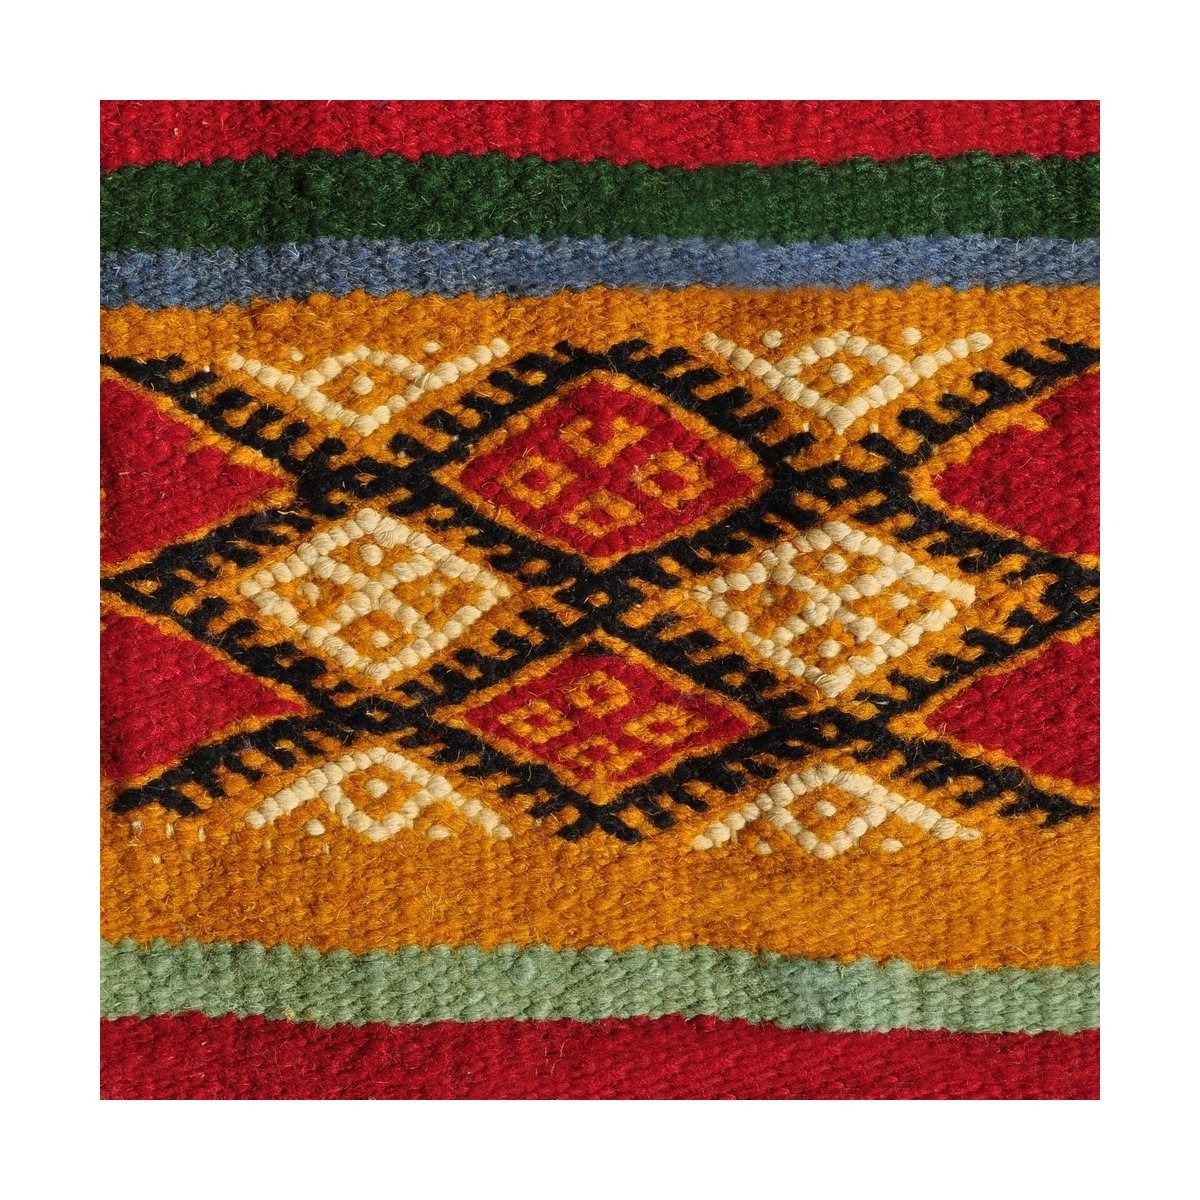 Tapete berbere Tapete Kilim Ouarzazate 125x245 Amarelo/Multicolorido (Tecidos à mão, Lã) Tapete tunisiano kilim, estilo marroqui